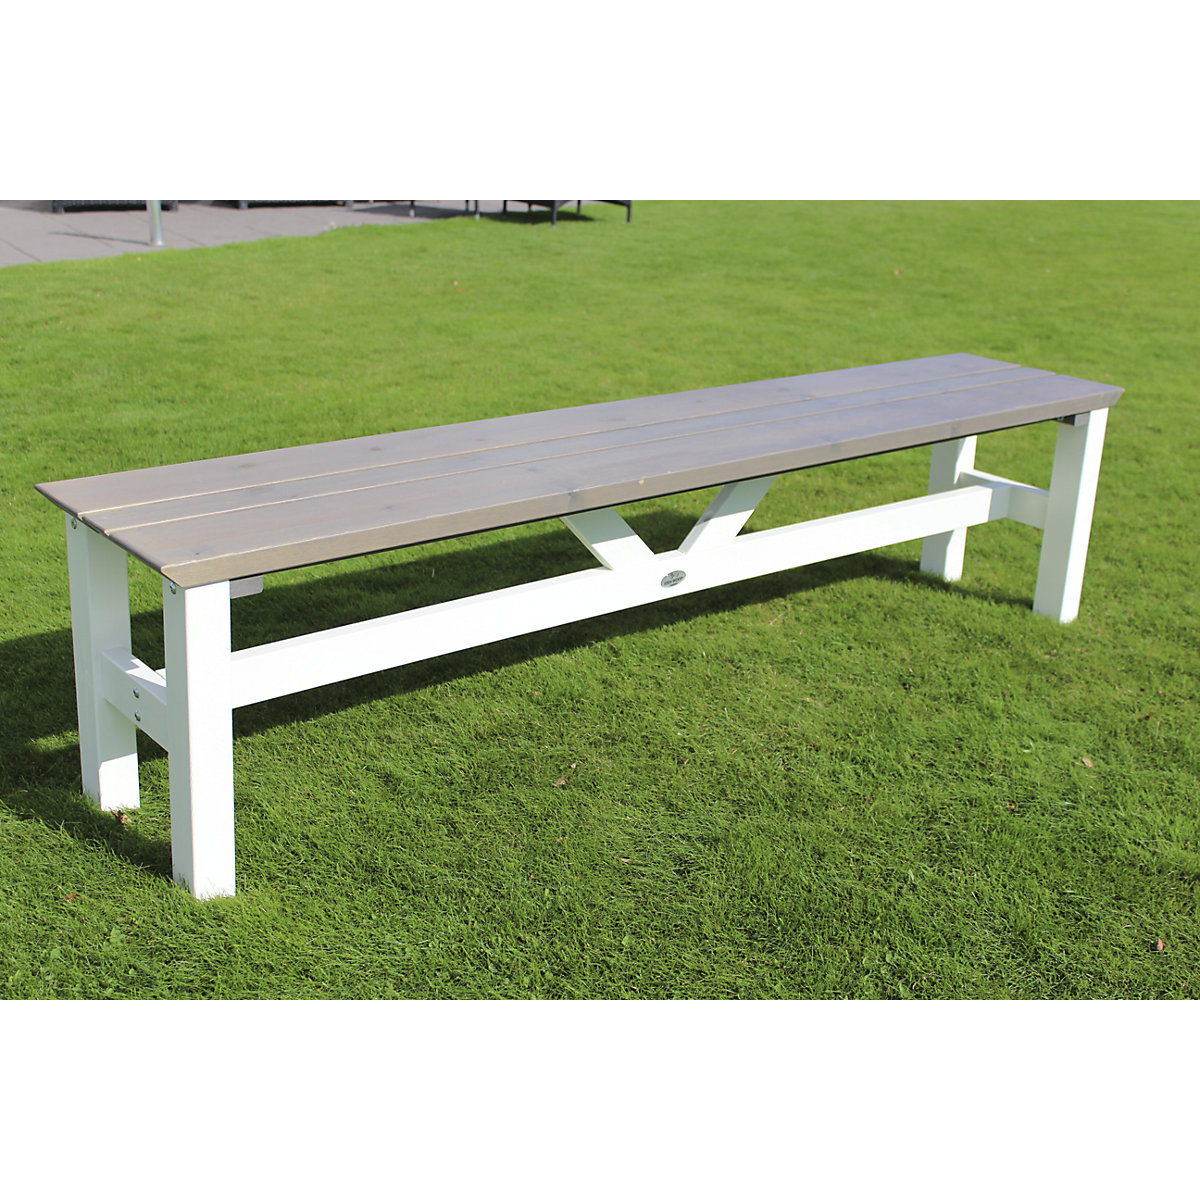 VIKING outdoor furniture series, bench seat, grey / white, length 1900 mm-5